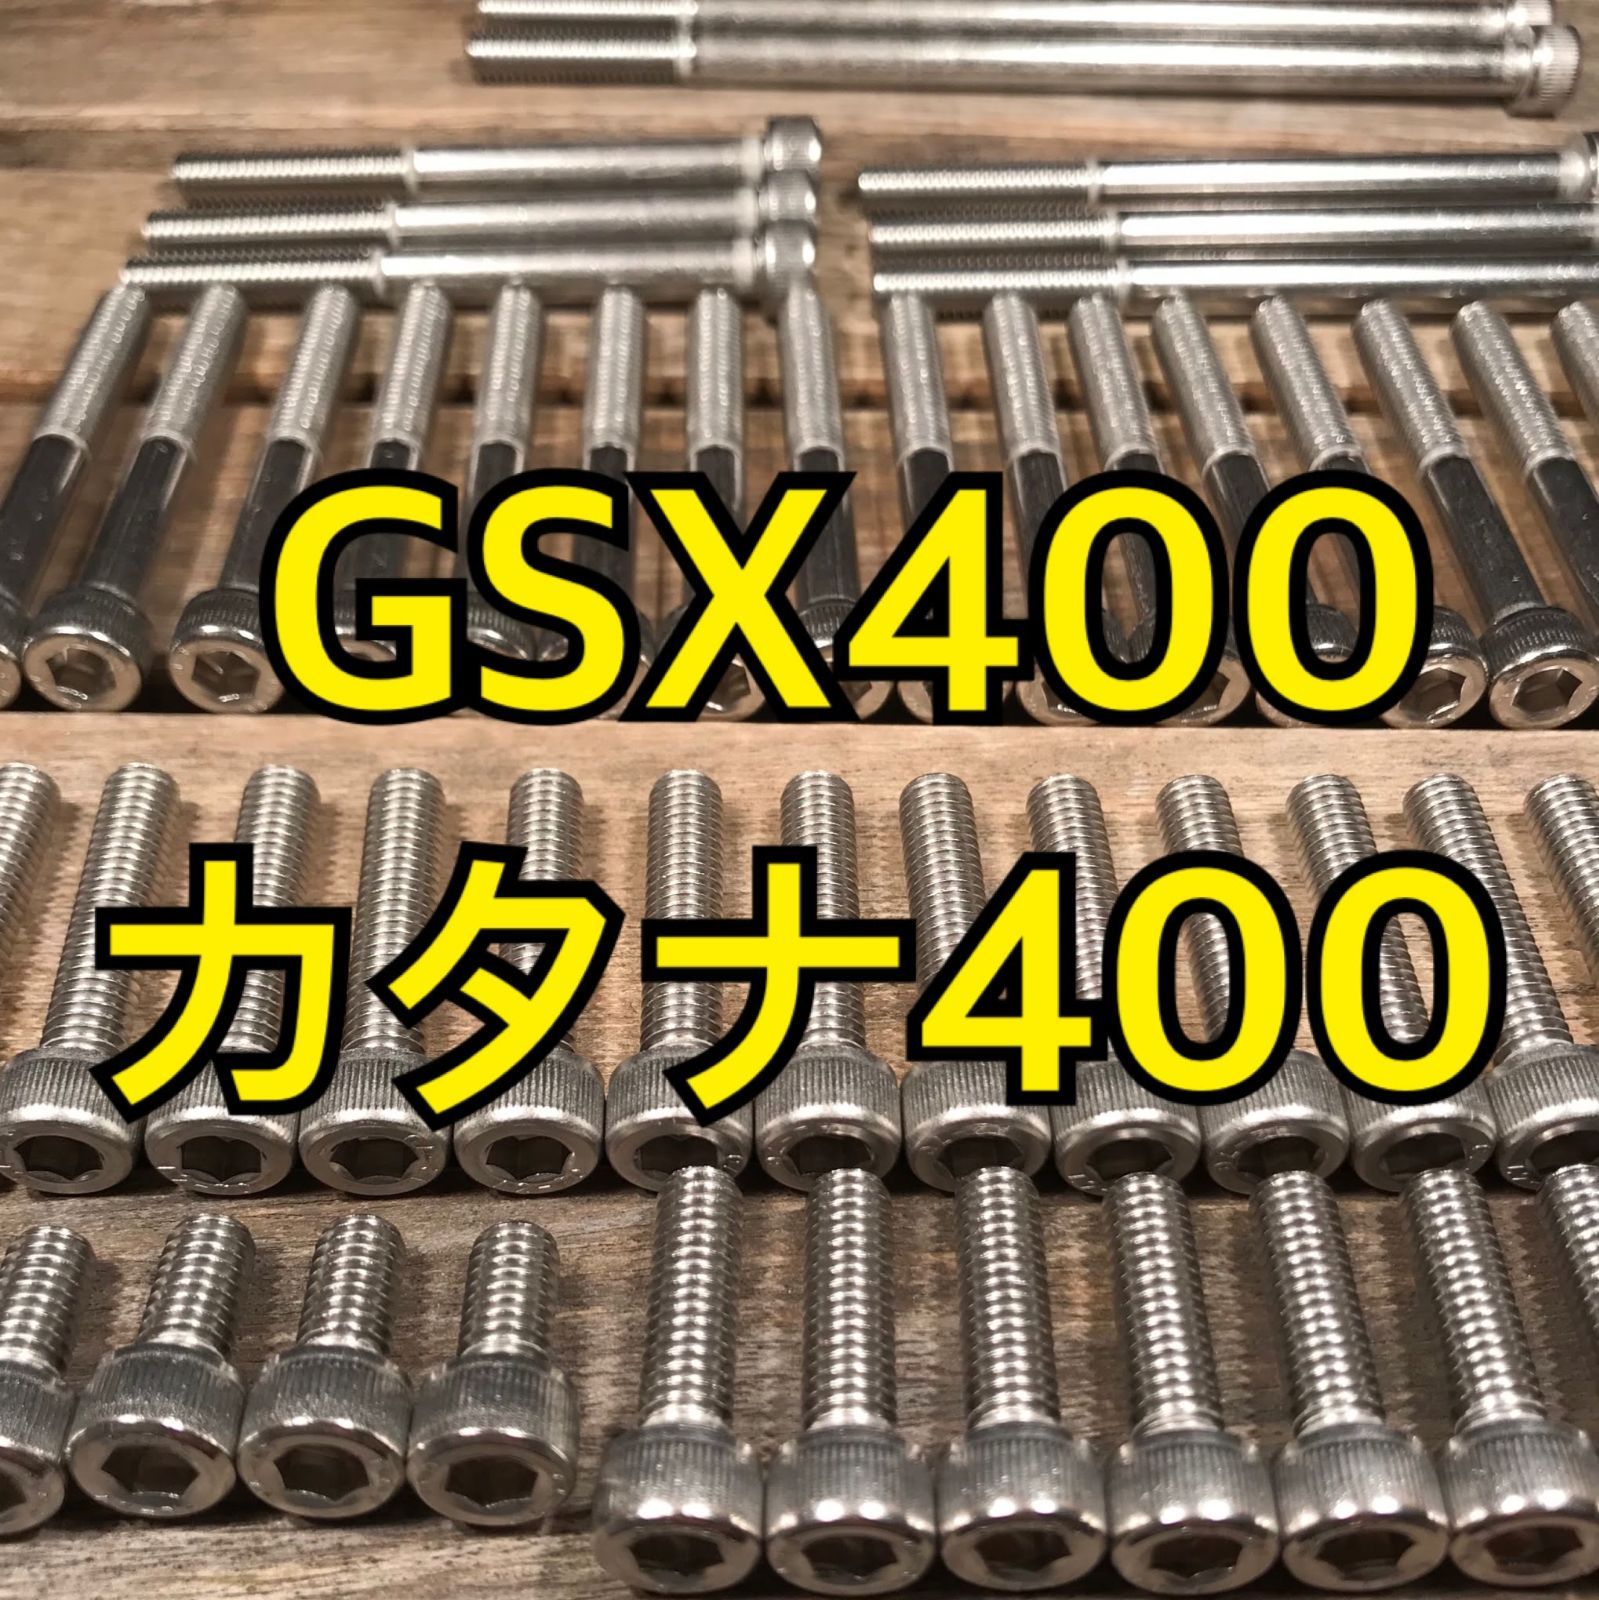 ステンレス製 GSX400カタナ GK77A 左右エンジンカバーボルト 合計28本 - メルカリ